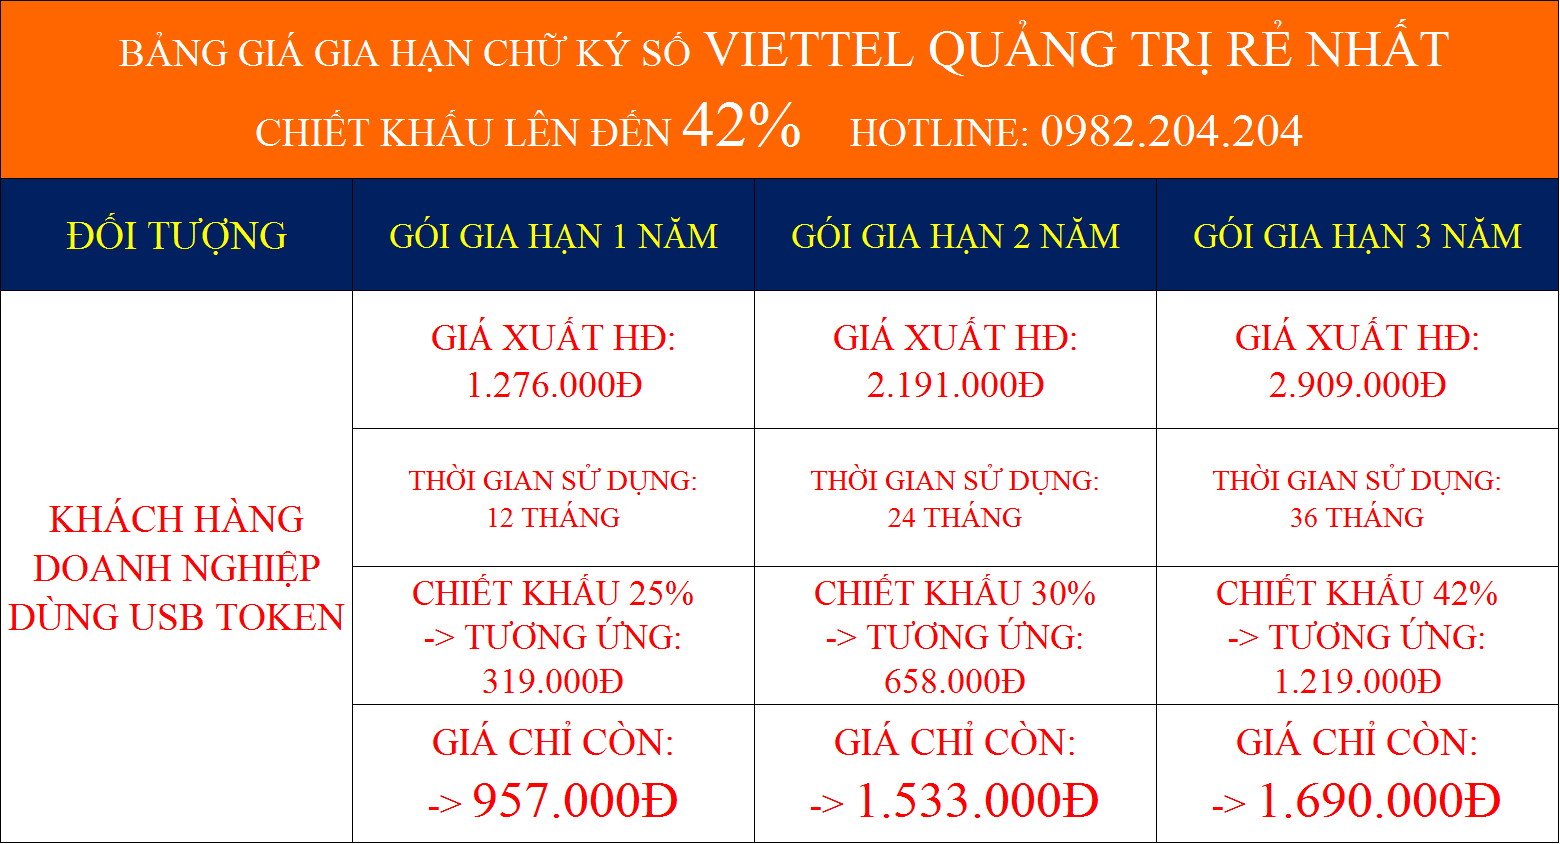 Bảng giá gia hạn chữ ký số Viettel Quảng Trị rẻ nhất